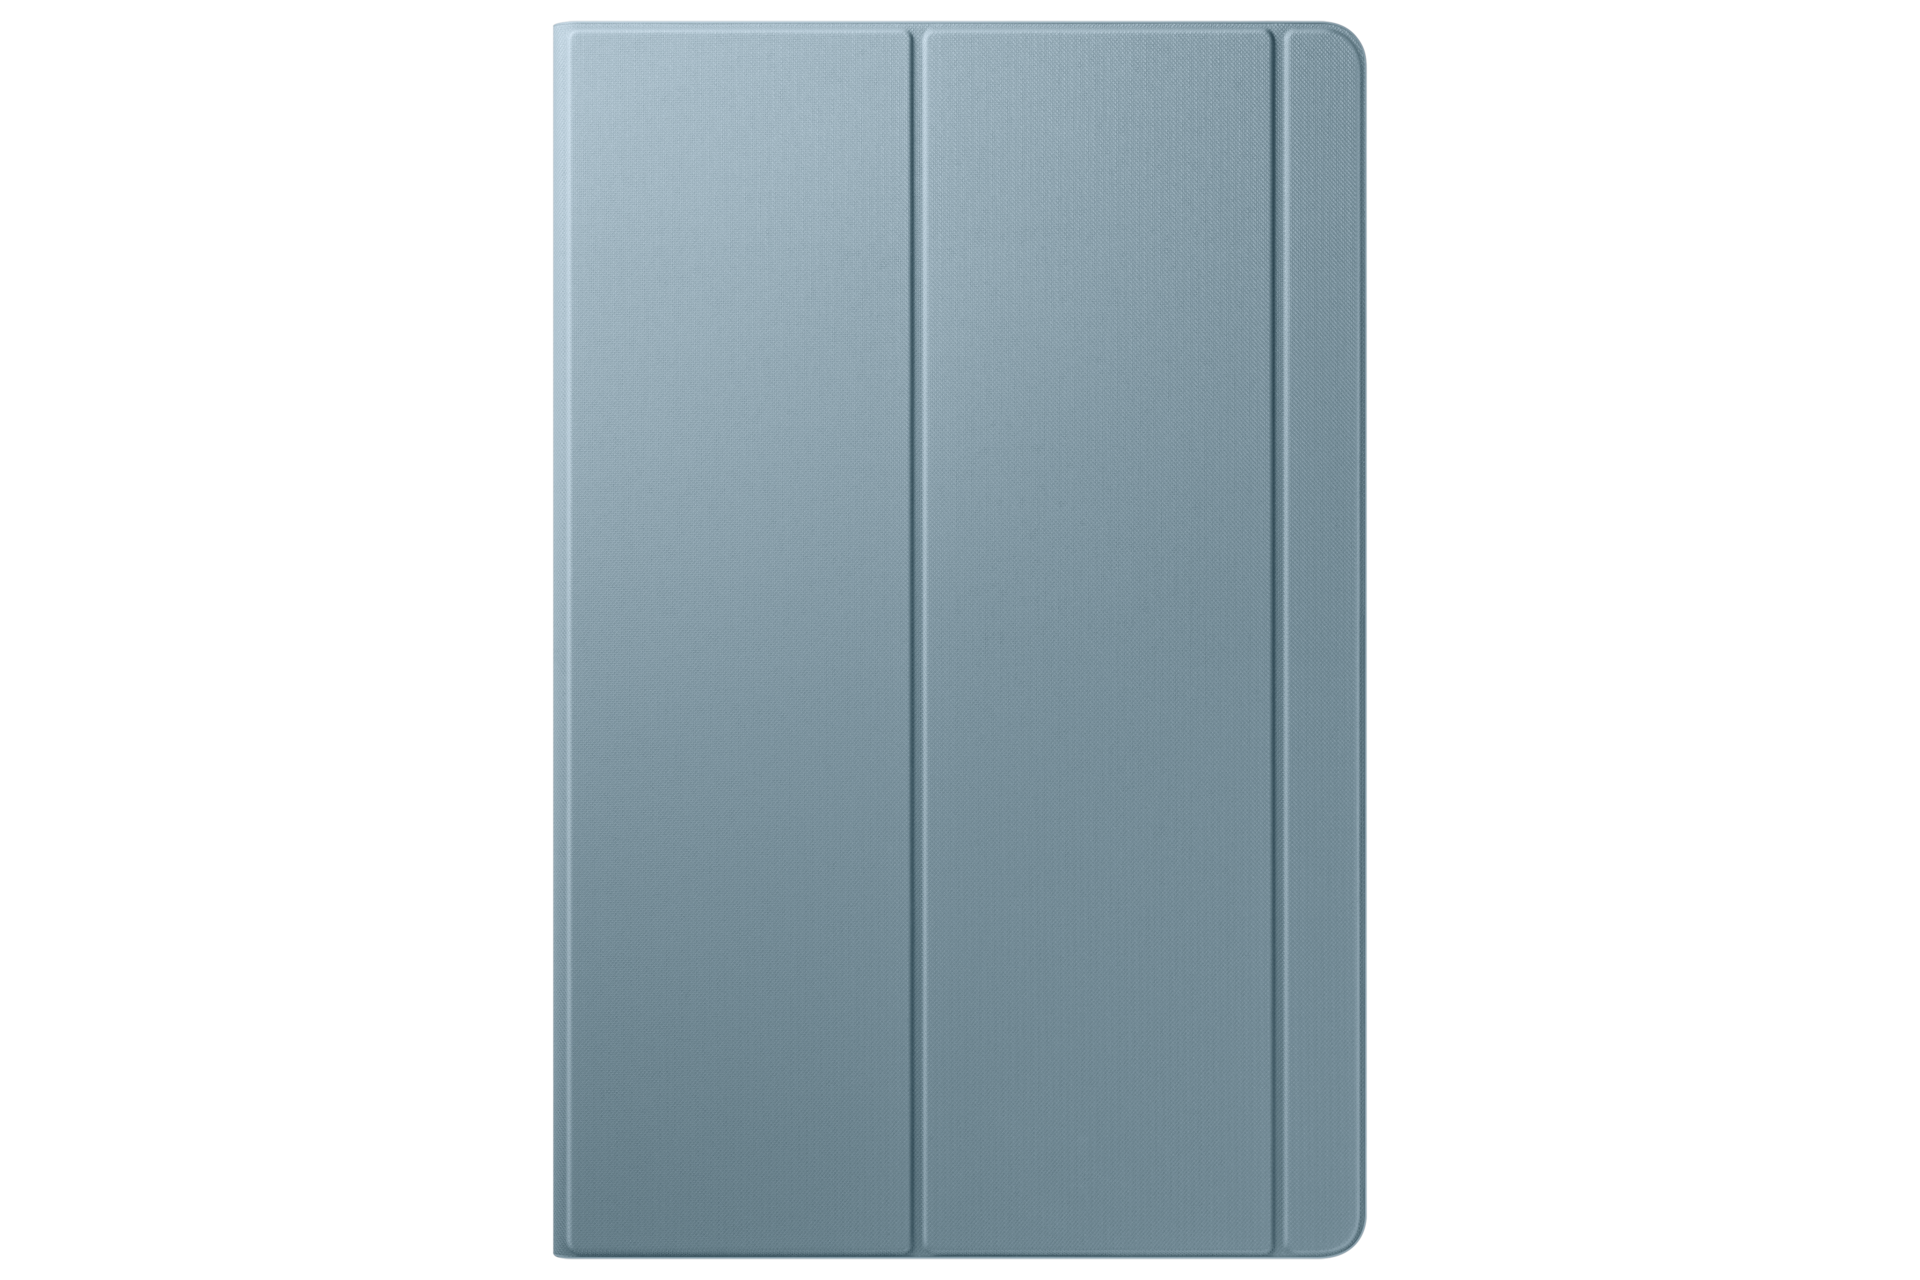 Funda Samsung Efbt860 para galaxy s6 10.5 plegable azul efbt860plegww book cover